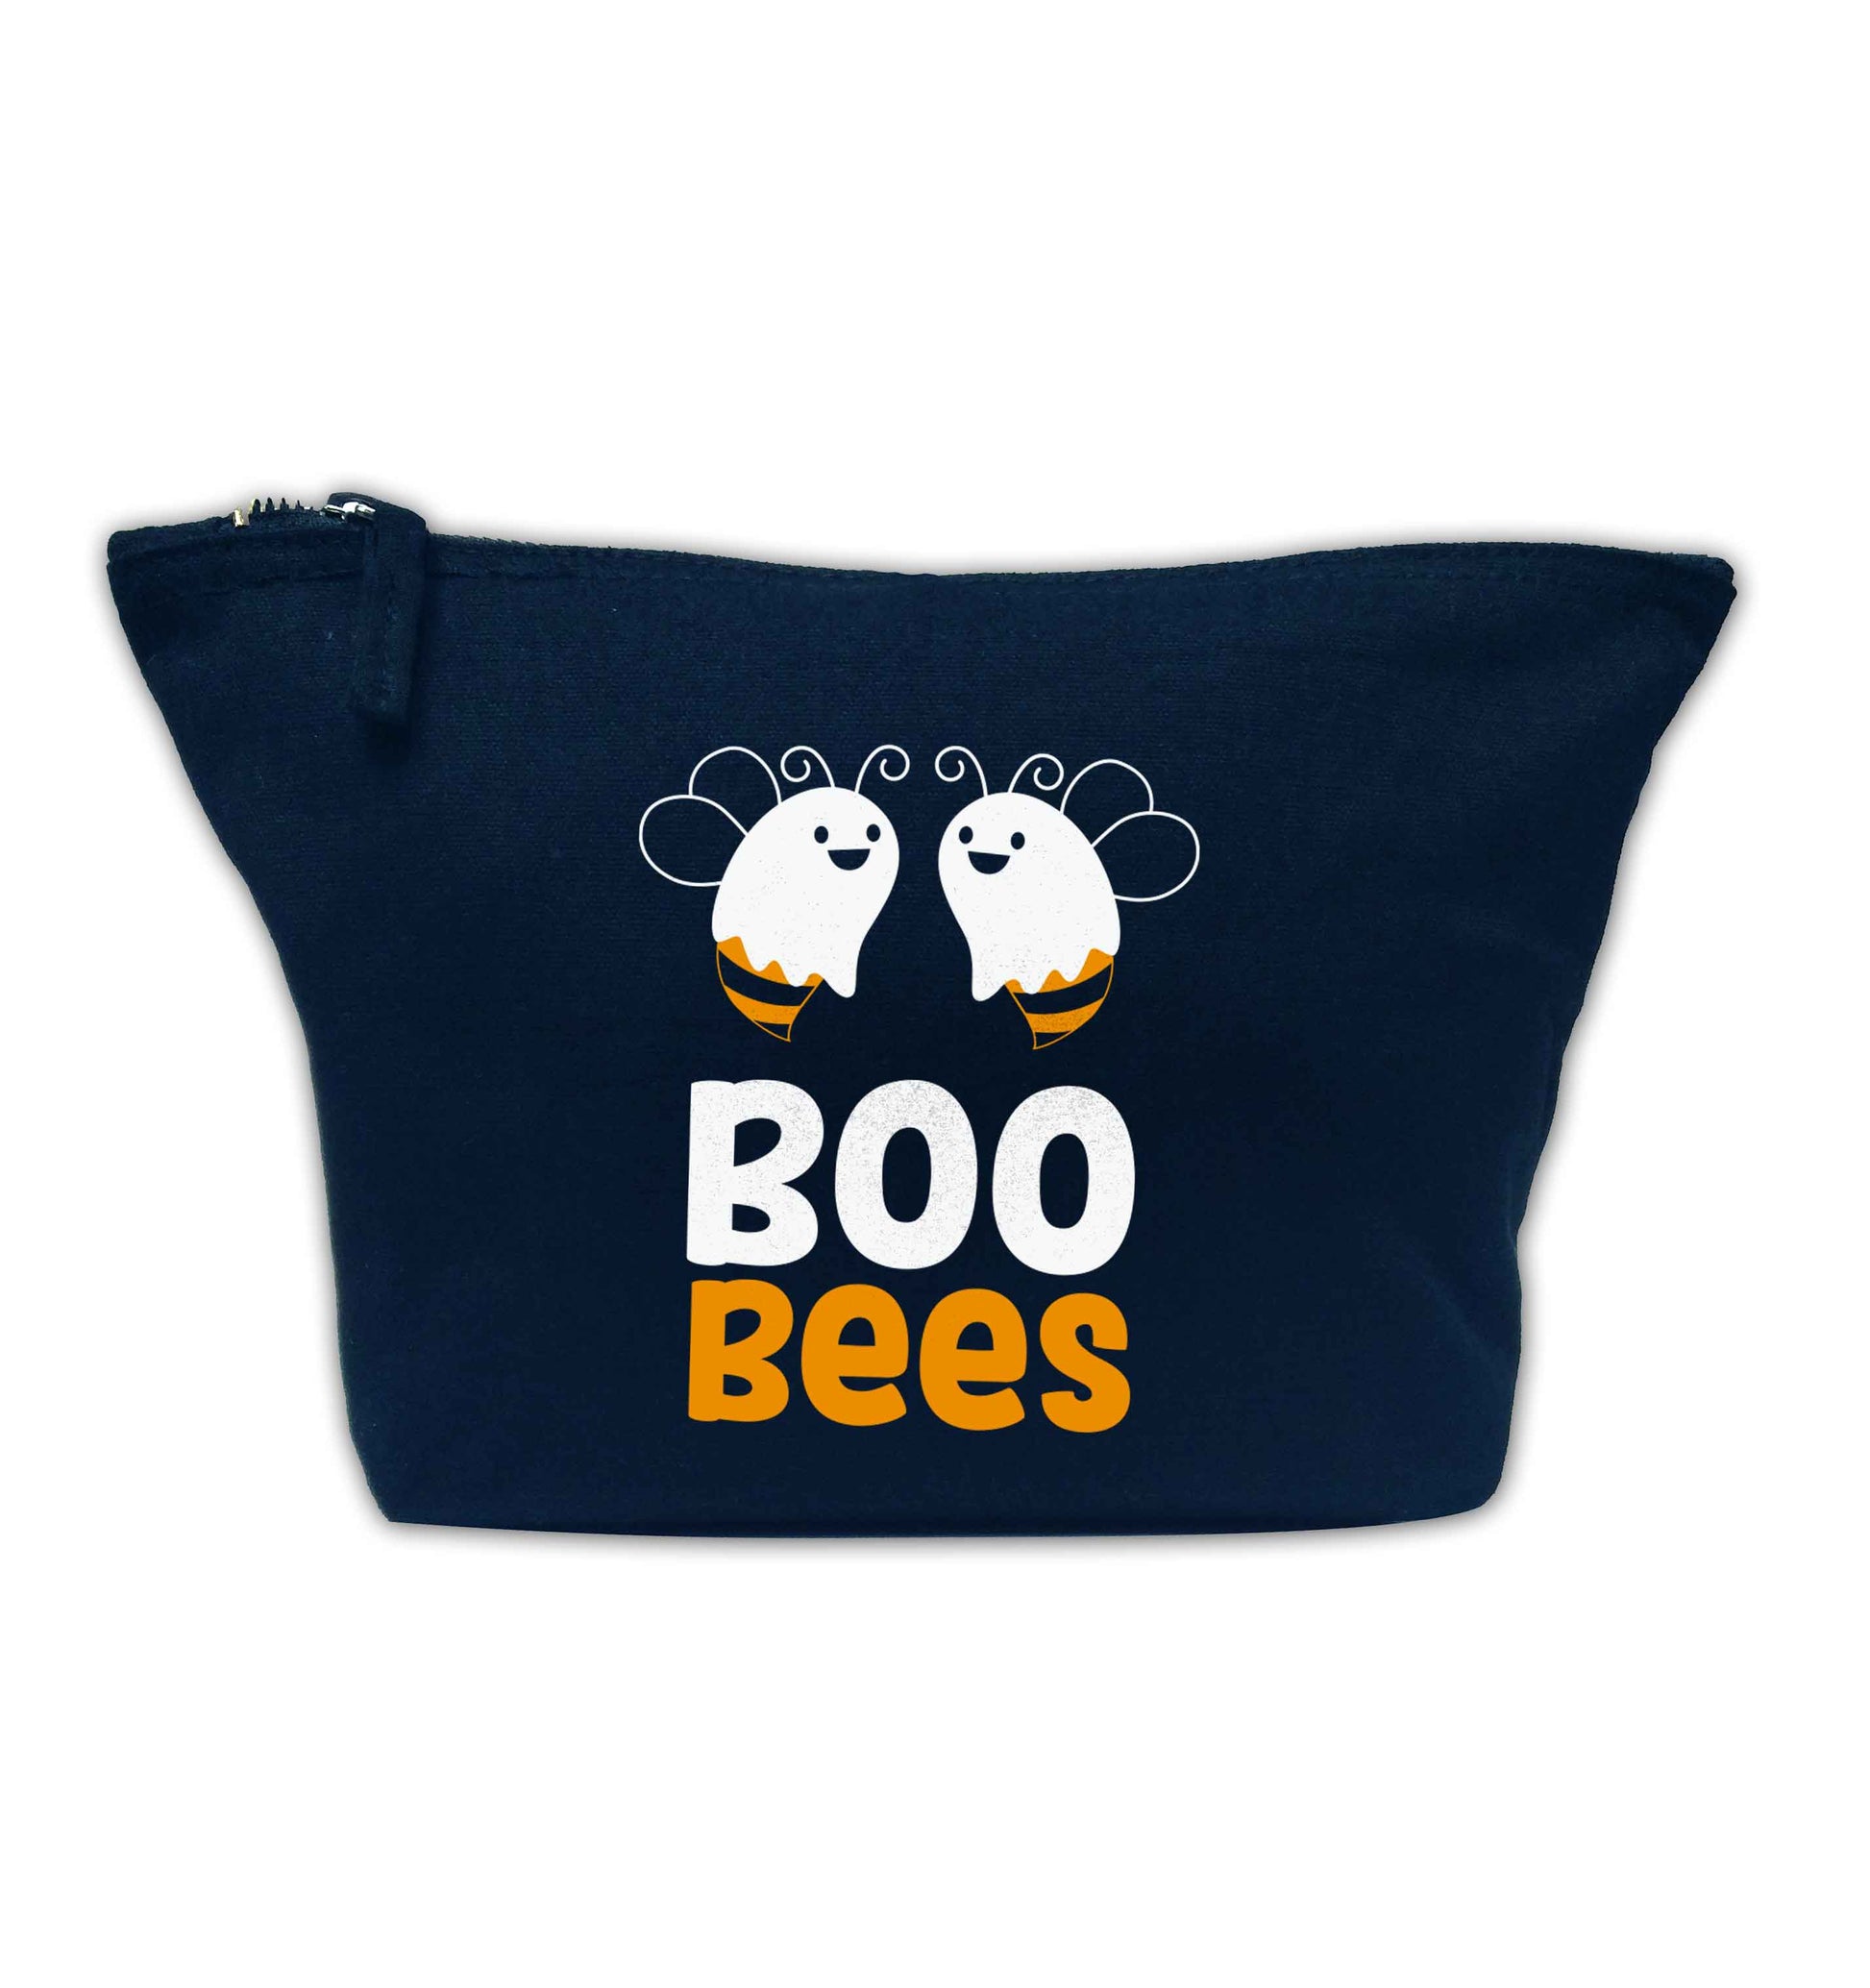 Boo bees Kit navy makeup bag